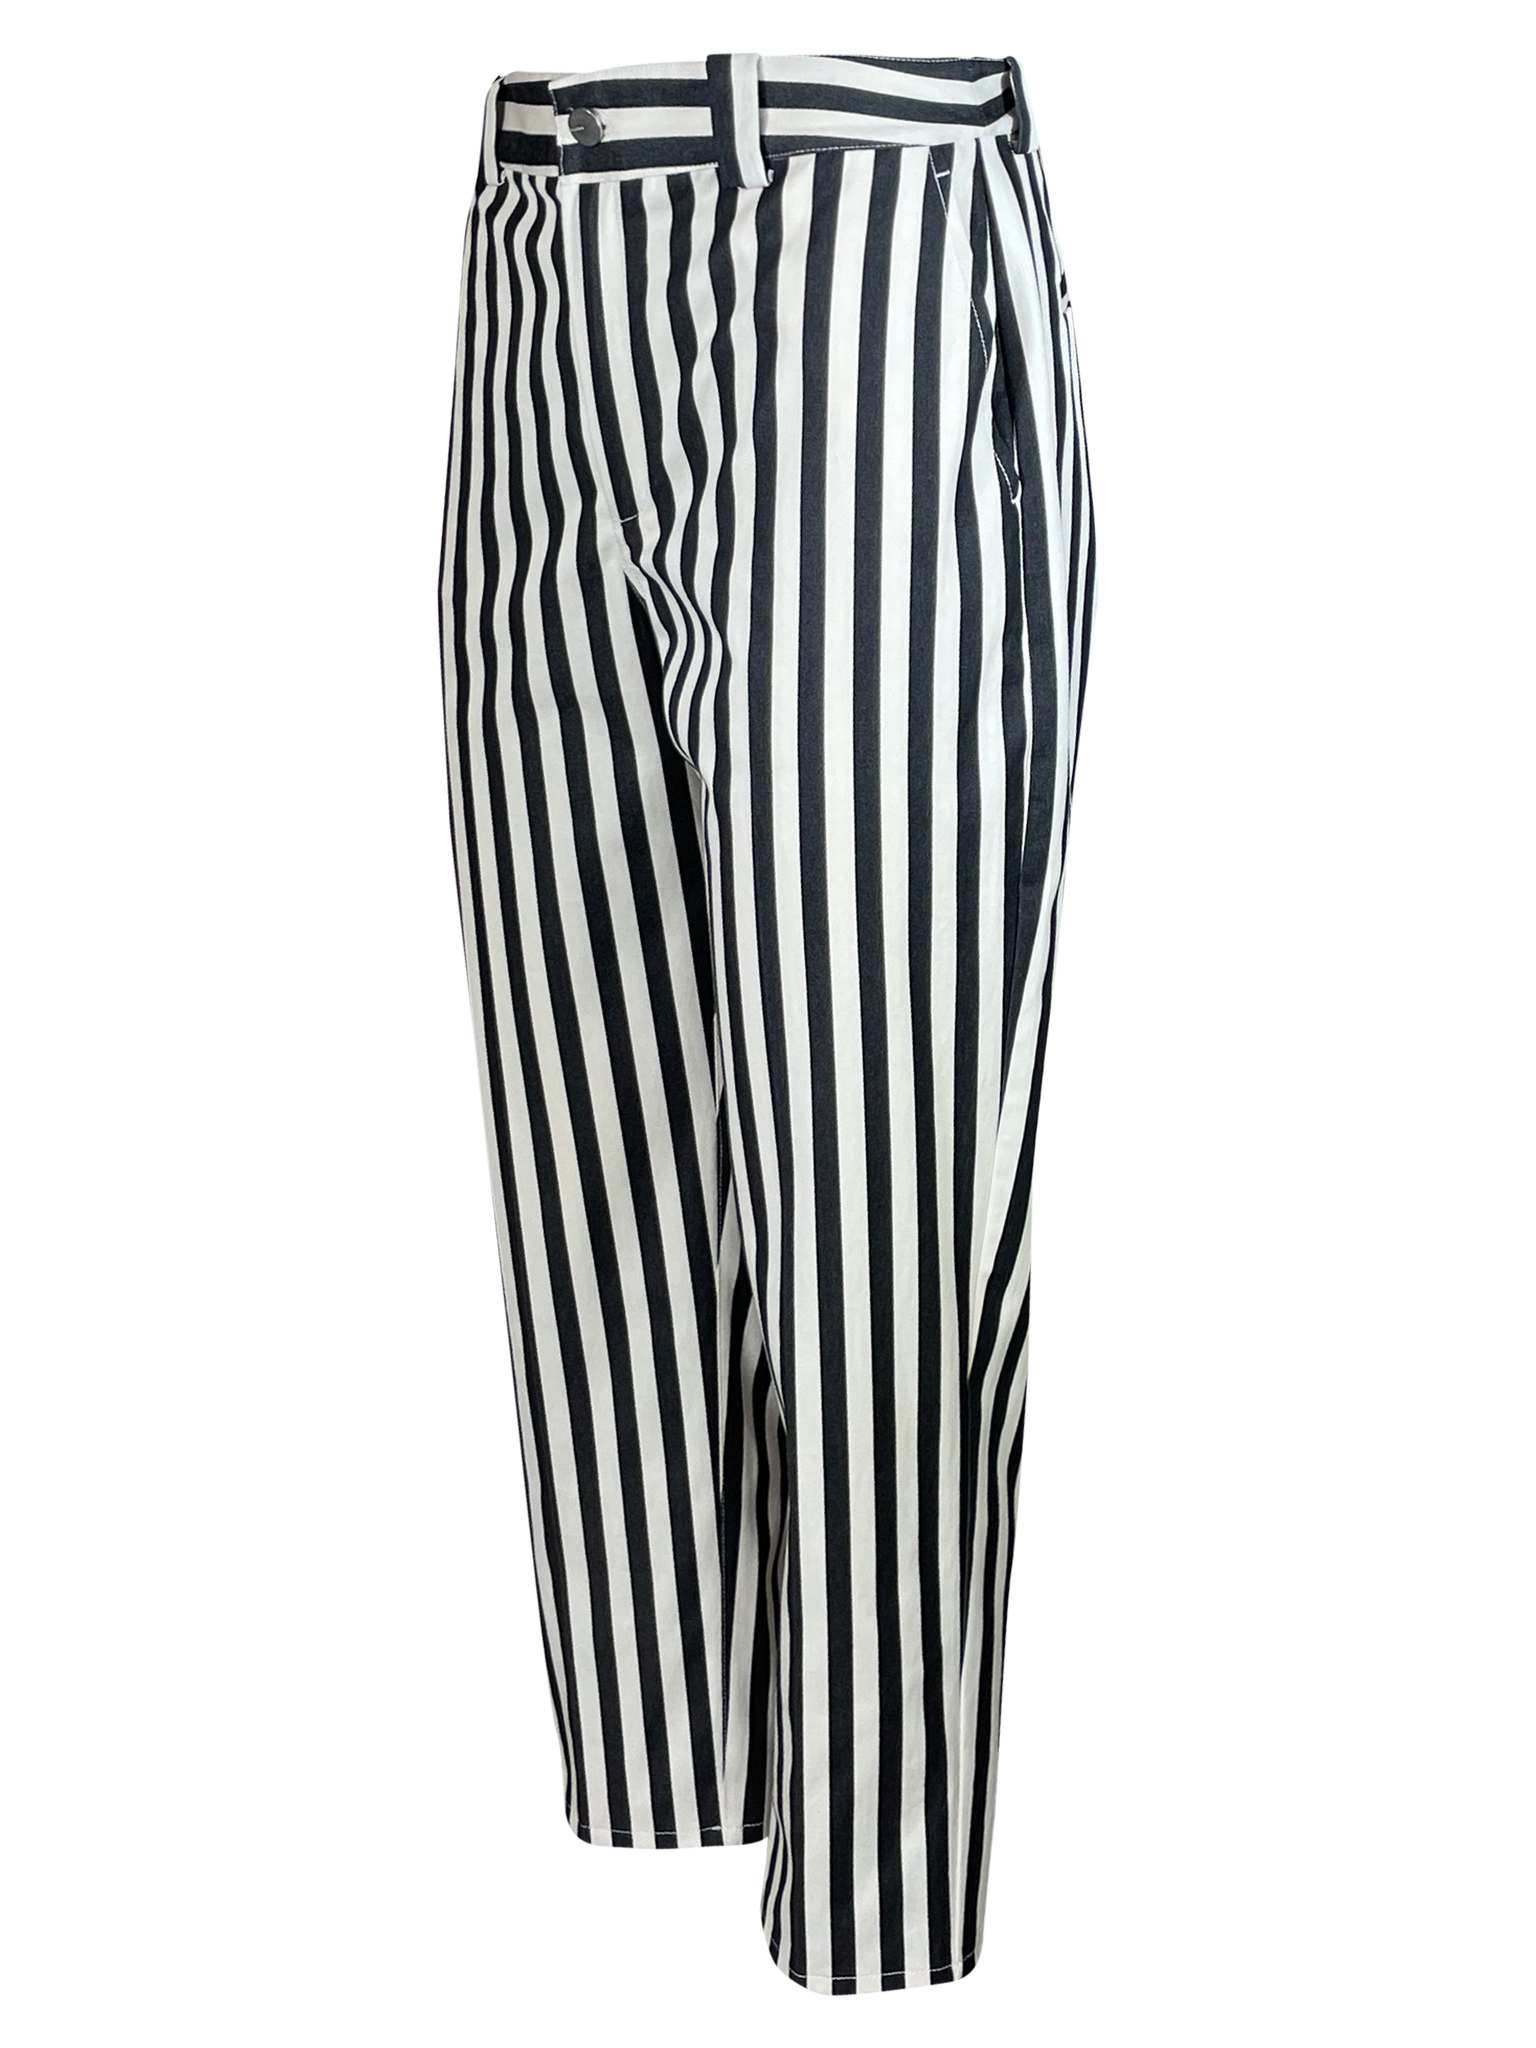 BLDWN Stripe Pant